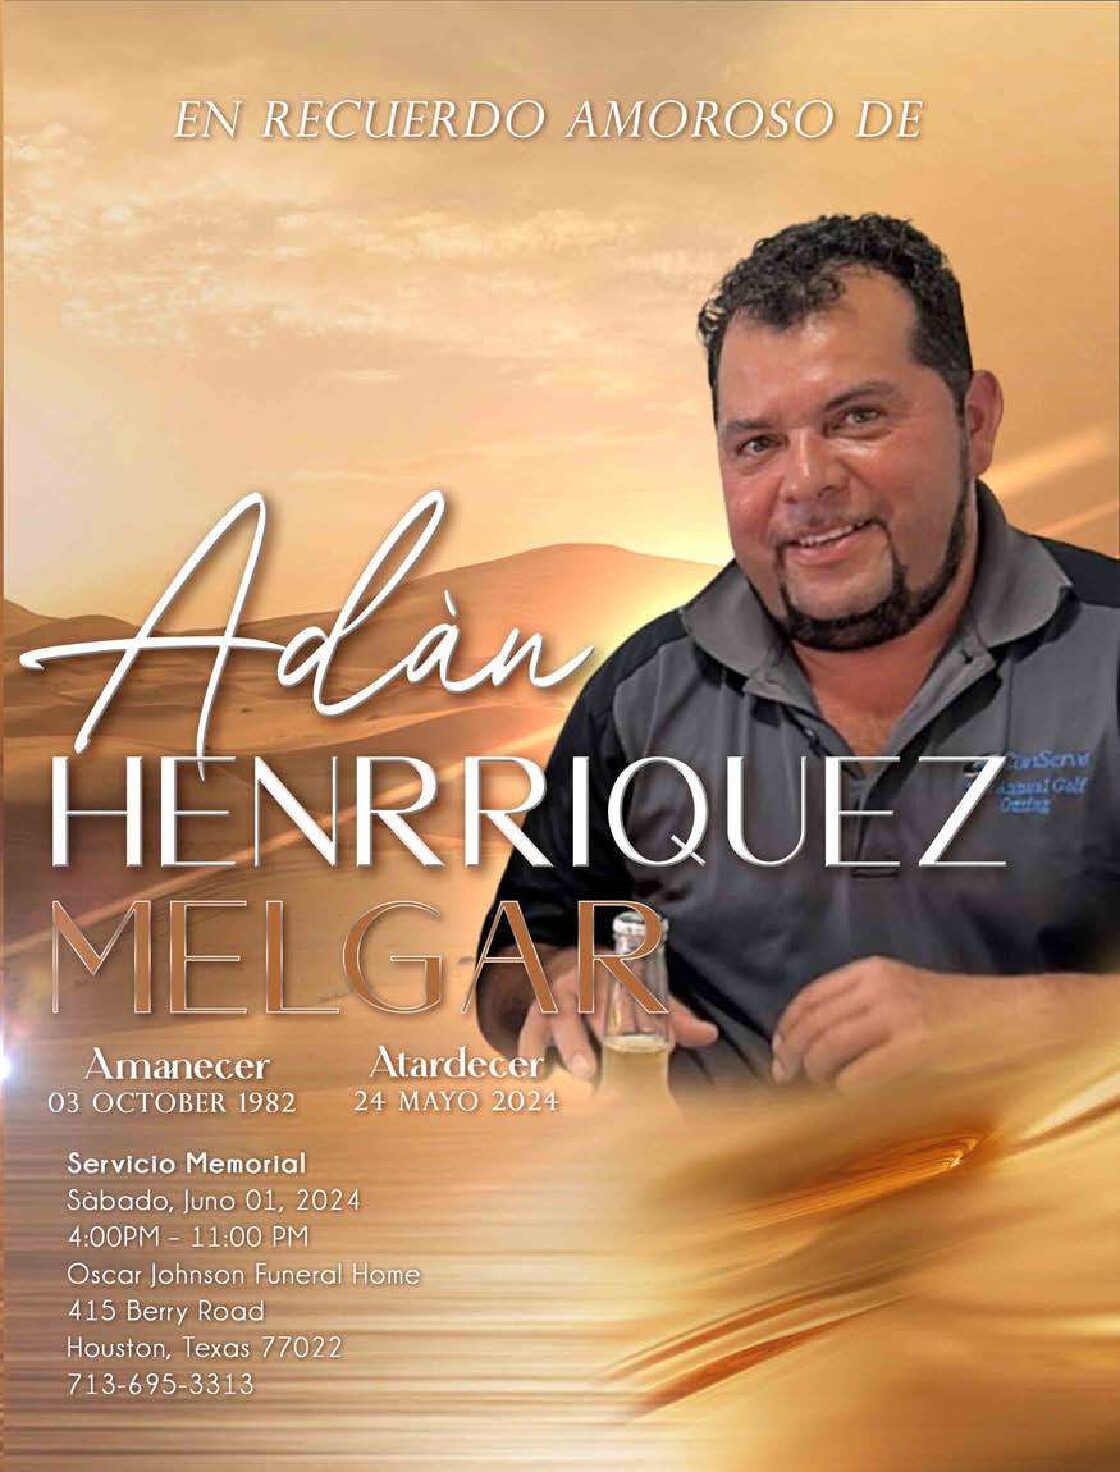 Adàn Henrriquez Melgar 1982 – 2024